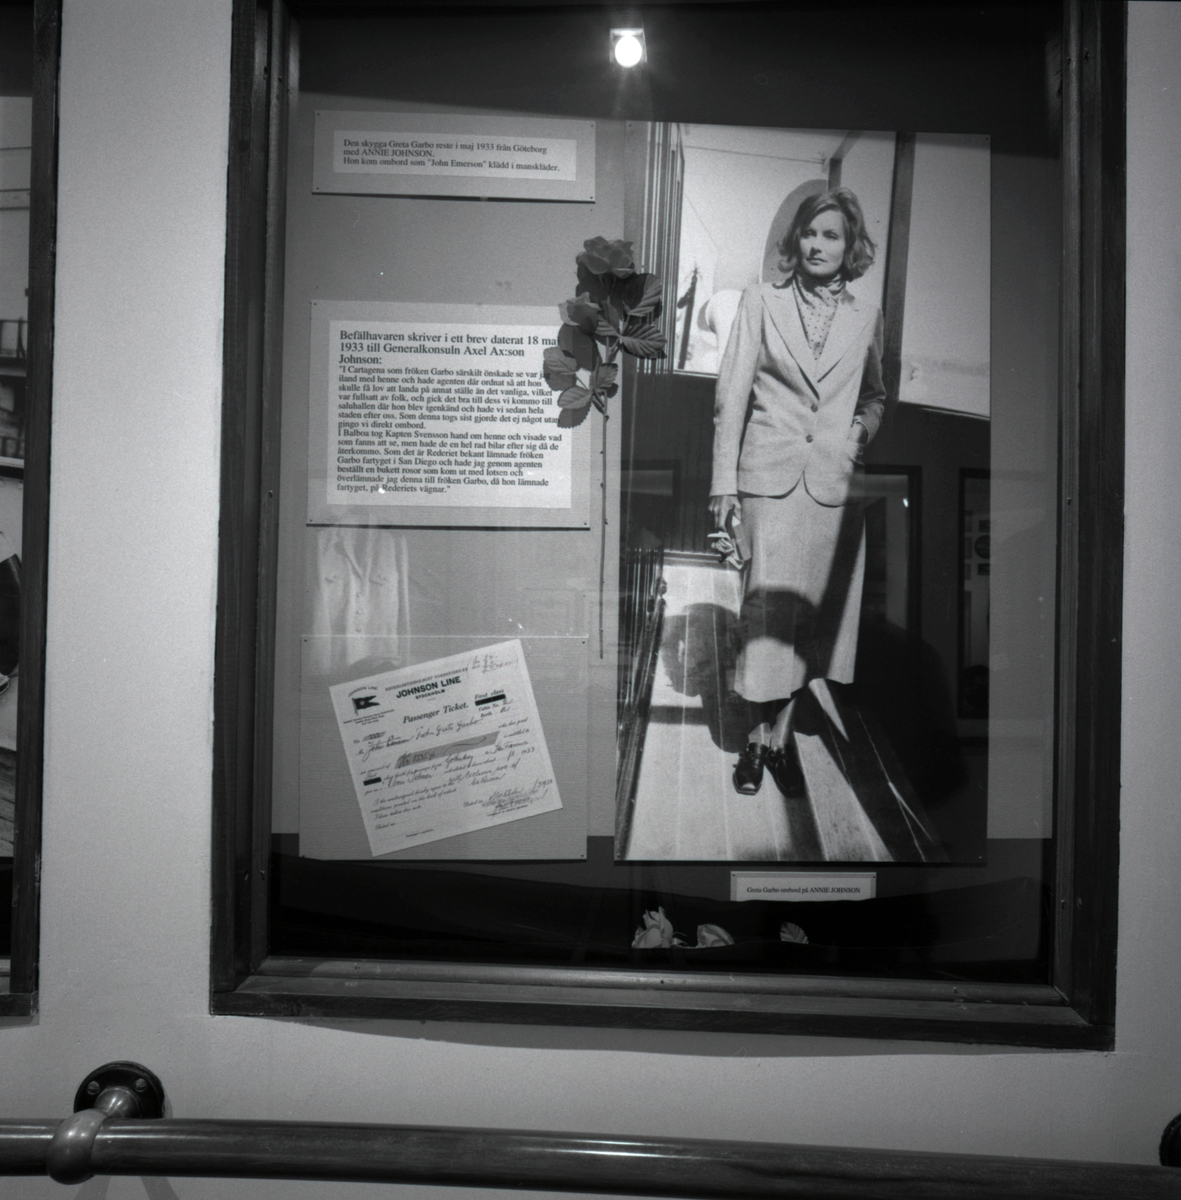 Utställningen "Johnson line 100 år, 1890 - 1900 Nordstjernan". Utställningsinteriör som visa Greta Garbo när hos reste med ANNIE JOHNSON år 1933. Hon kom ombord som "John Emerson" klädd i manskläder.